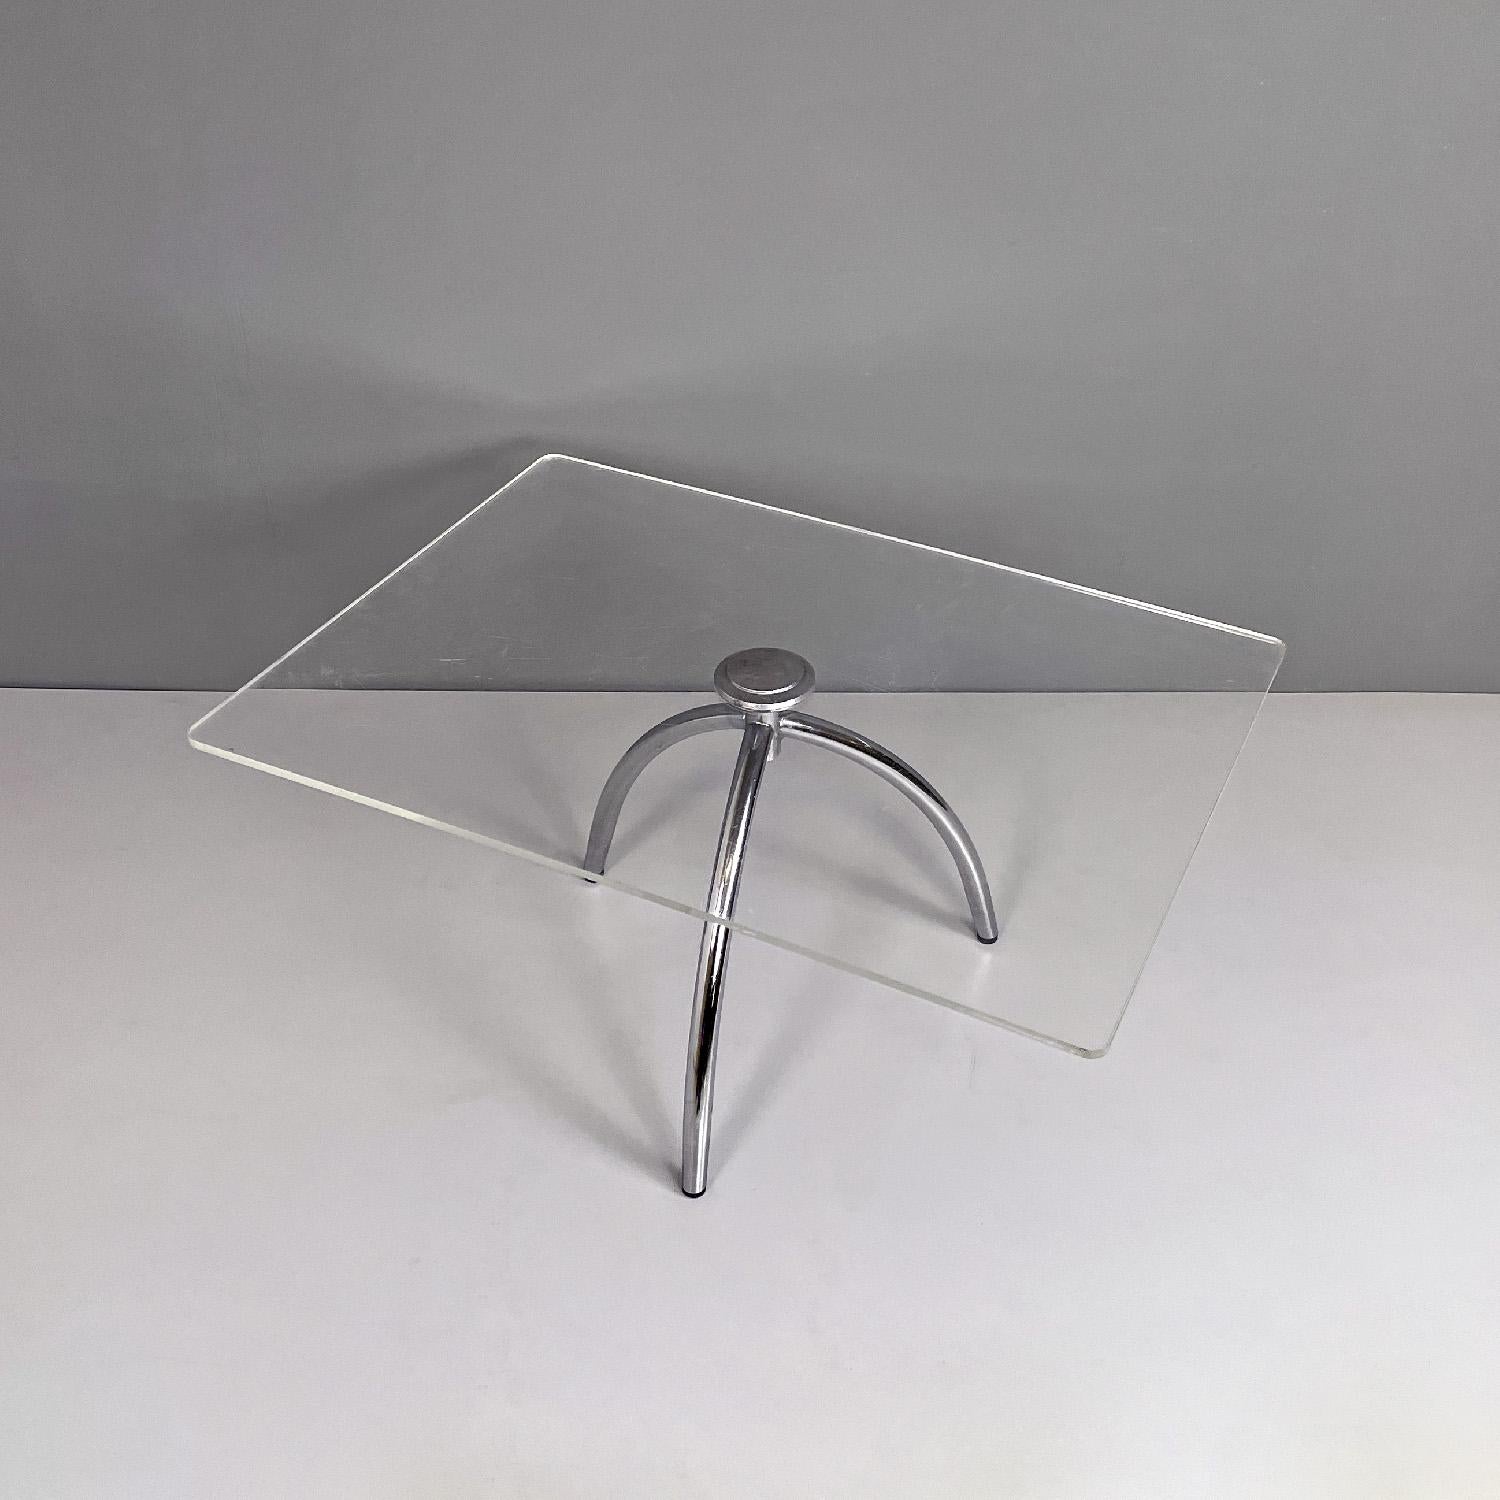 Italienischer moderner Couchtisch aus transparentem Plexiglas und Aluminiumstruktur, 1980er Jahre
Couchtisch mit rechteckiger Platte aus transparentem Plexiglas. Oben befindet sich ein rundes Aluminiumelement, das es mit der Struktur verbindet, die